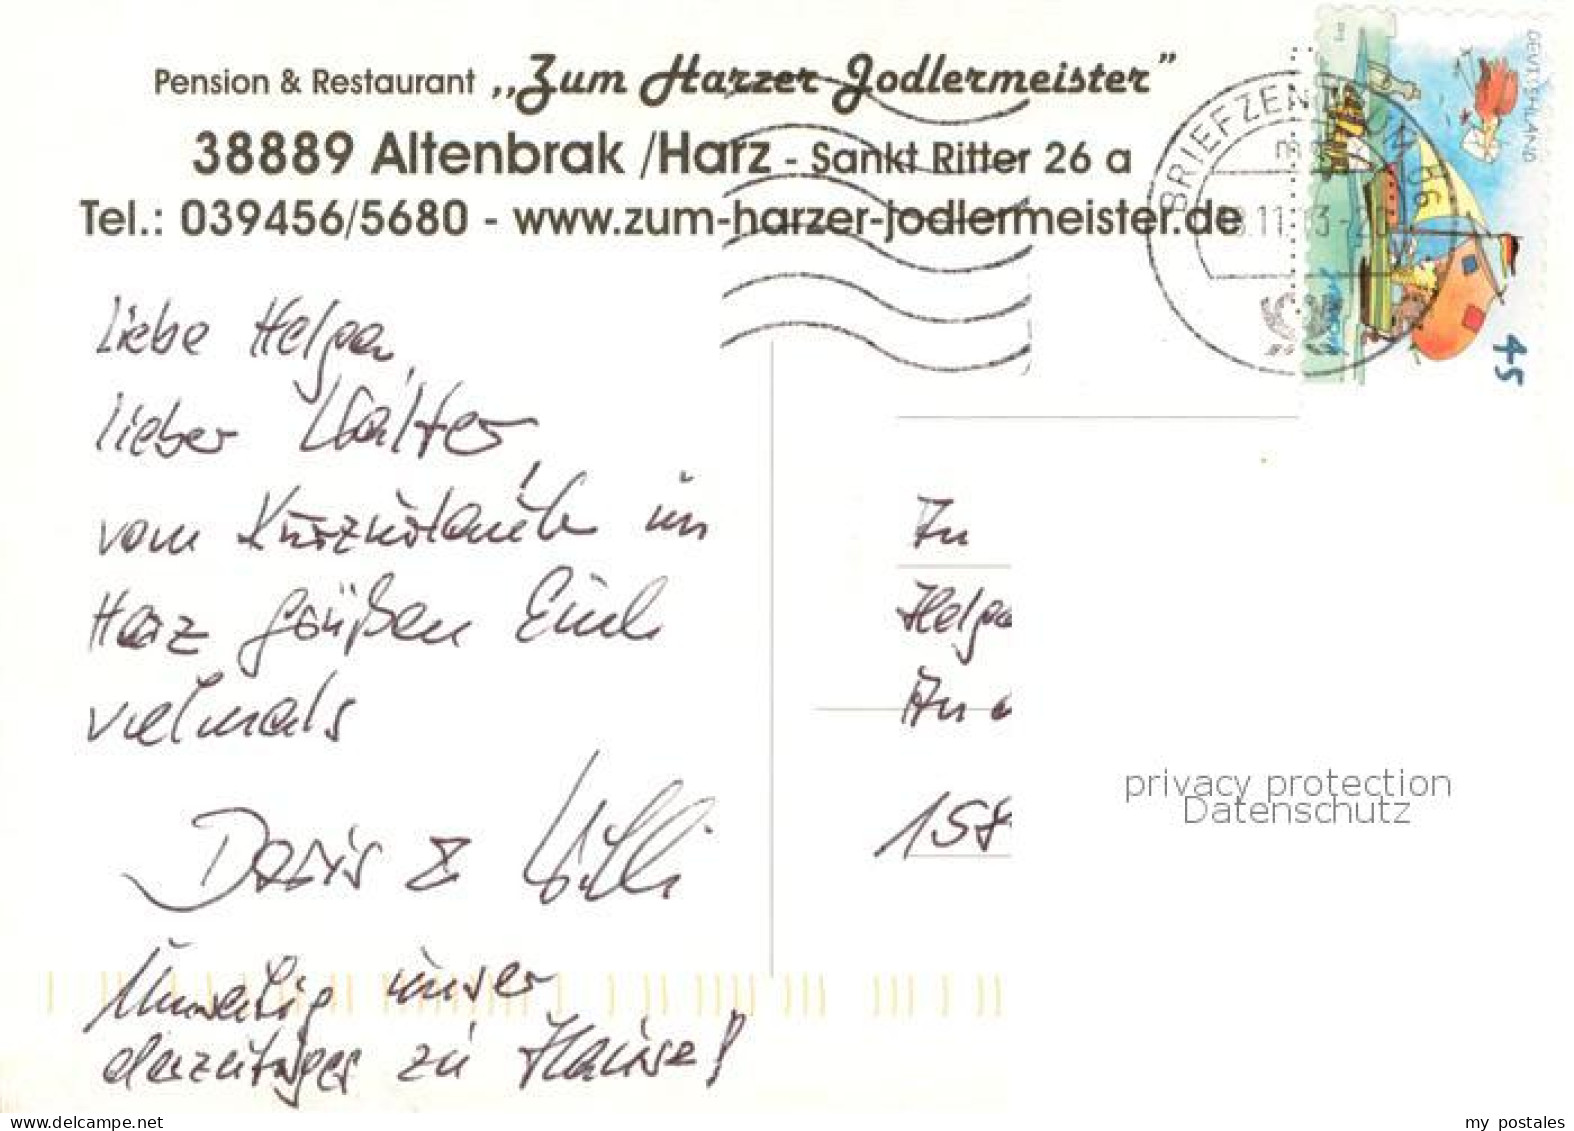 73757632 Altenbrak Harz Pension Und Restaurant Zum Harzer Jodlermeister Altenbra - Altenbrak